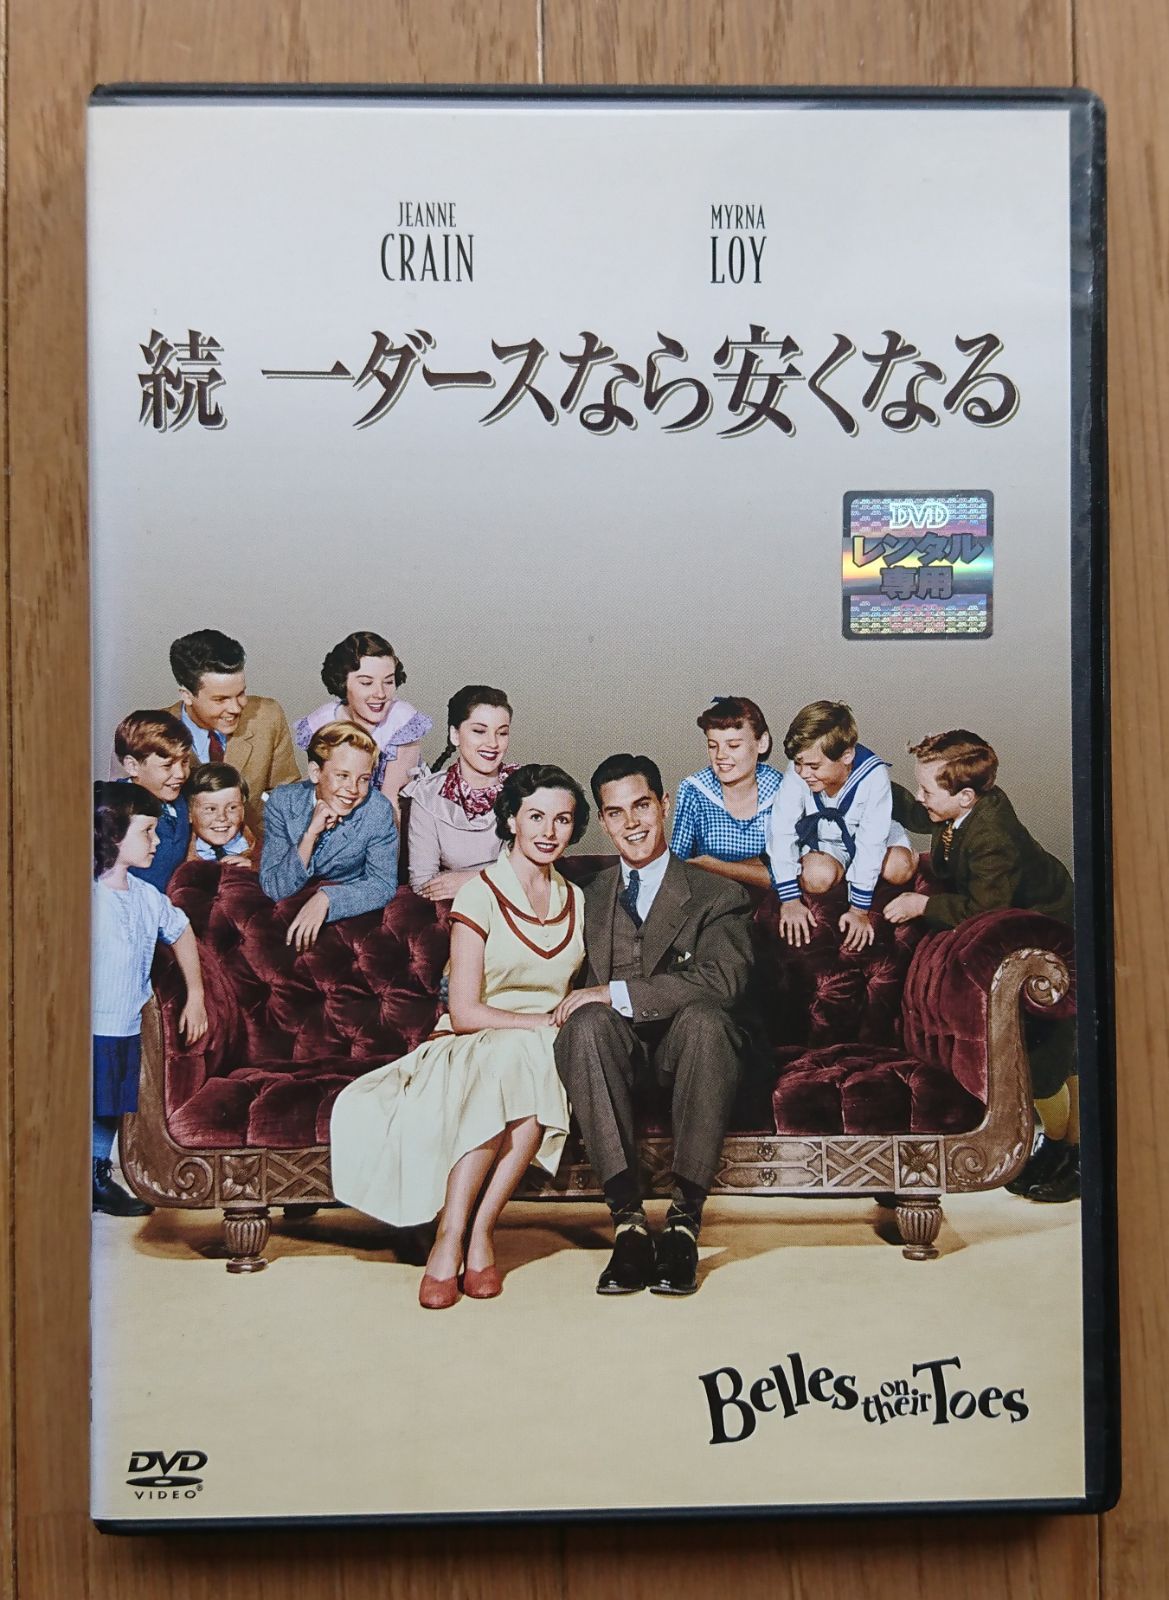 レンタル版DVD】続 一ダースなら安くなる 出演:マーナ・ロイ 1952年作品 - メルカリ